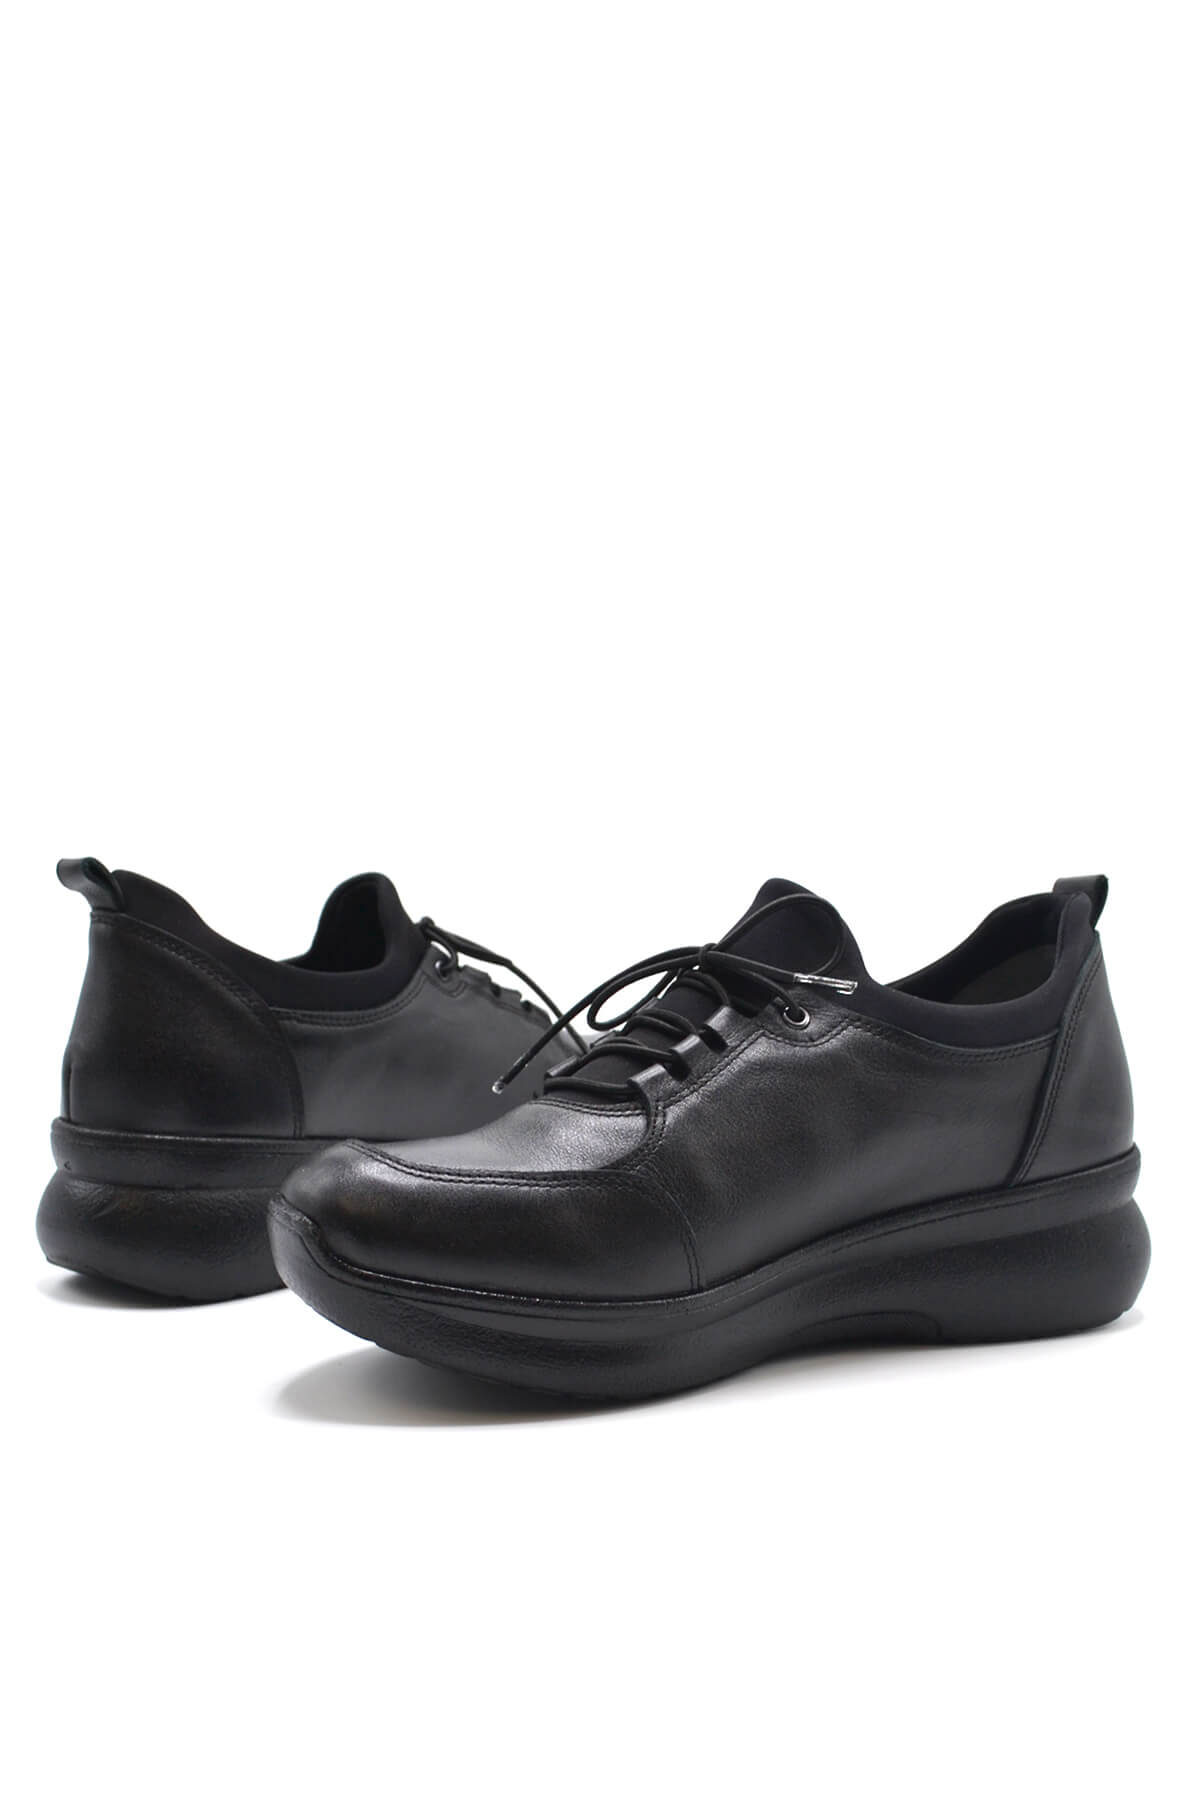 Kadın Comfort Deri Ayakkabı Siyah 1901707K - Thumbnail